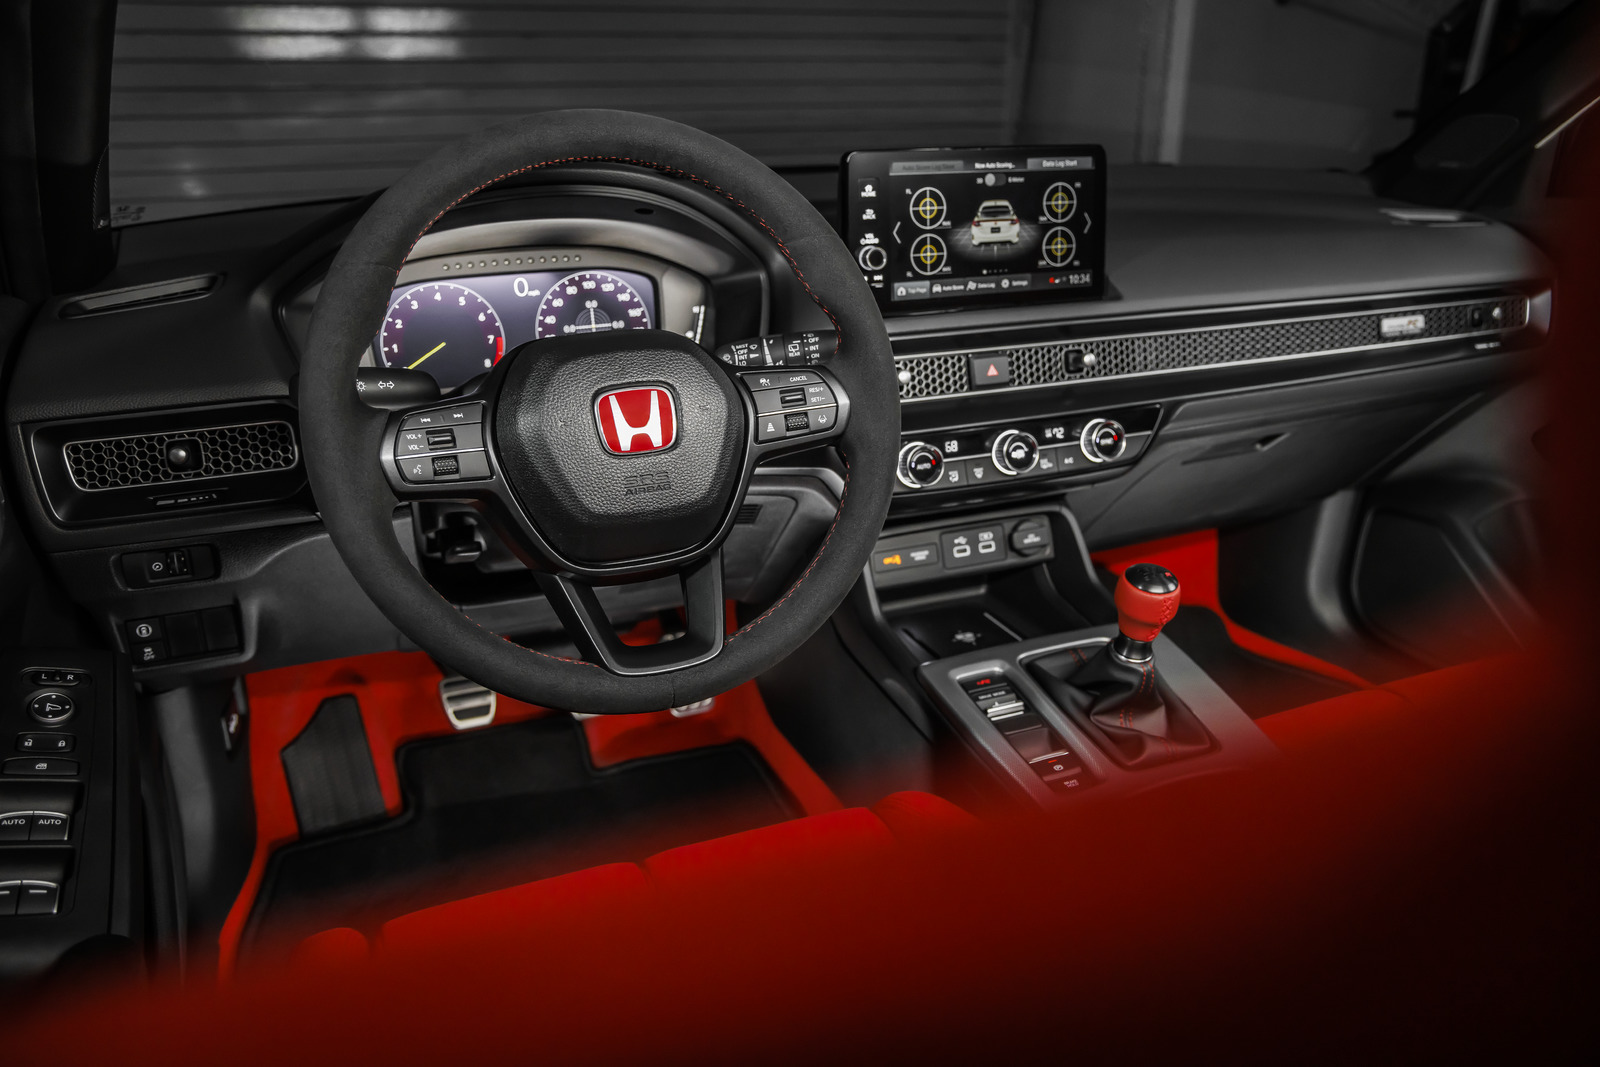 Nội thất được phối hai màu chủ đạo đỏ và đen đặc trưng của dòng xe thể thao Honda.